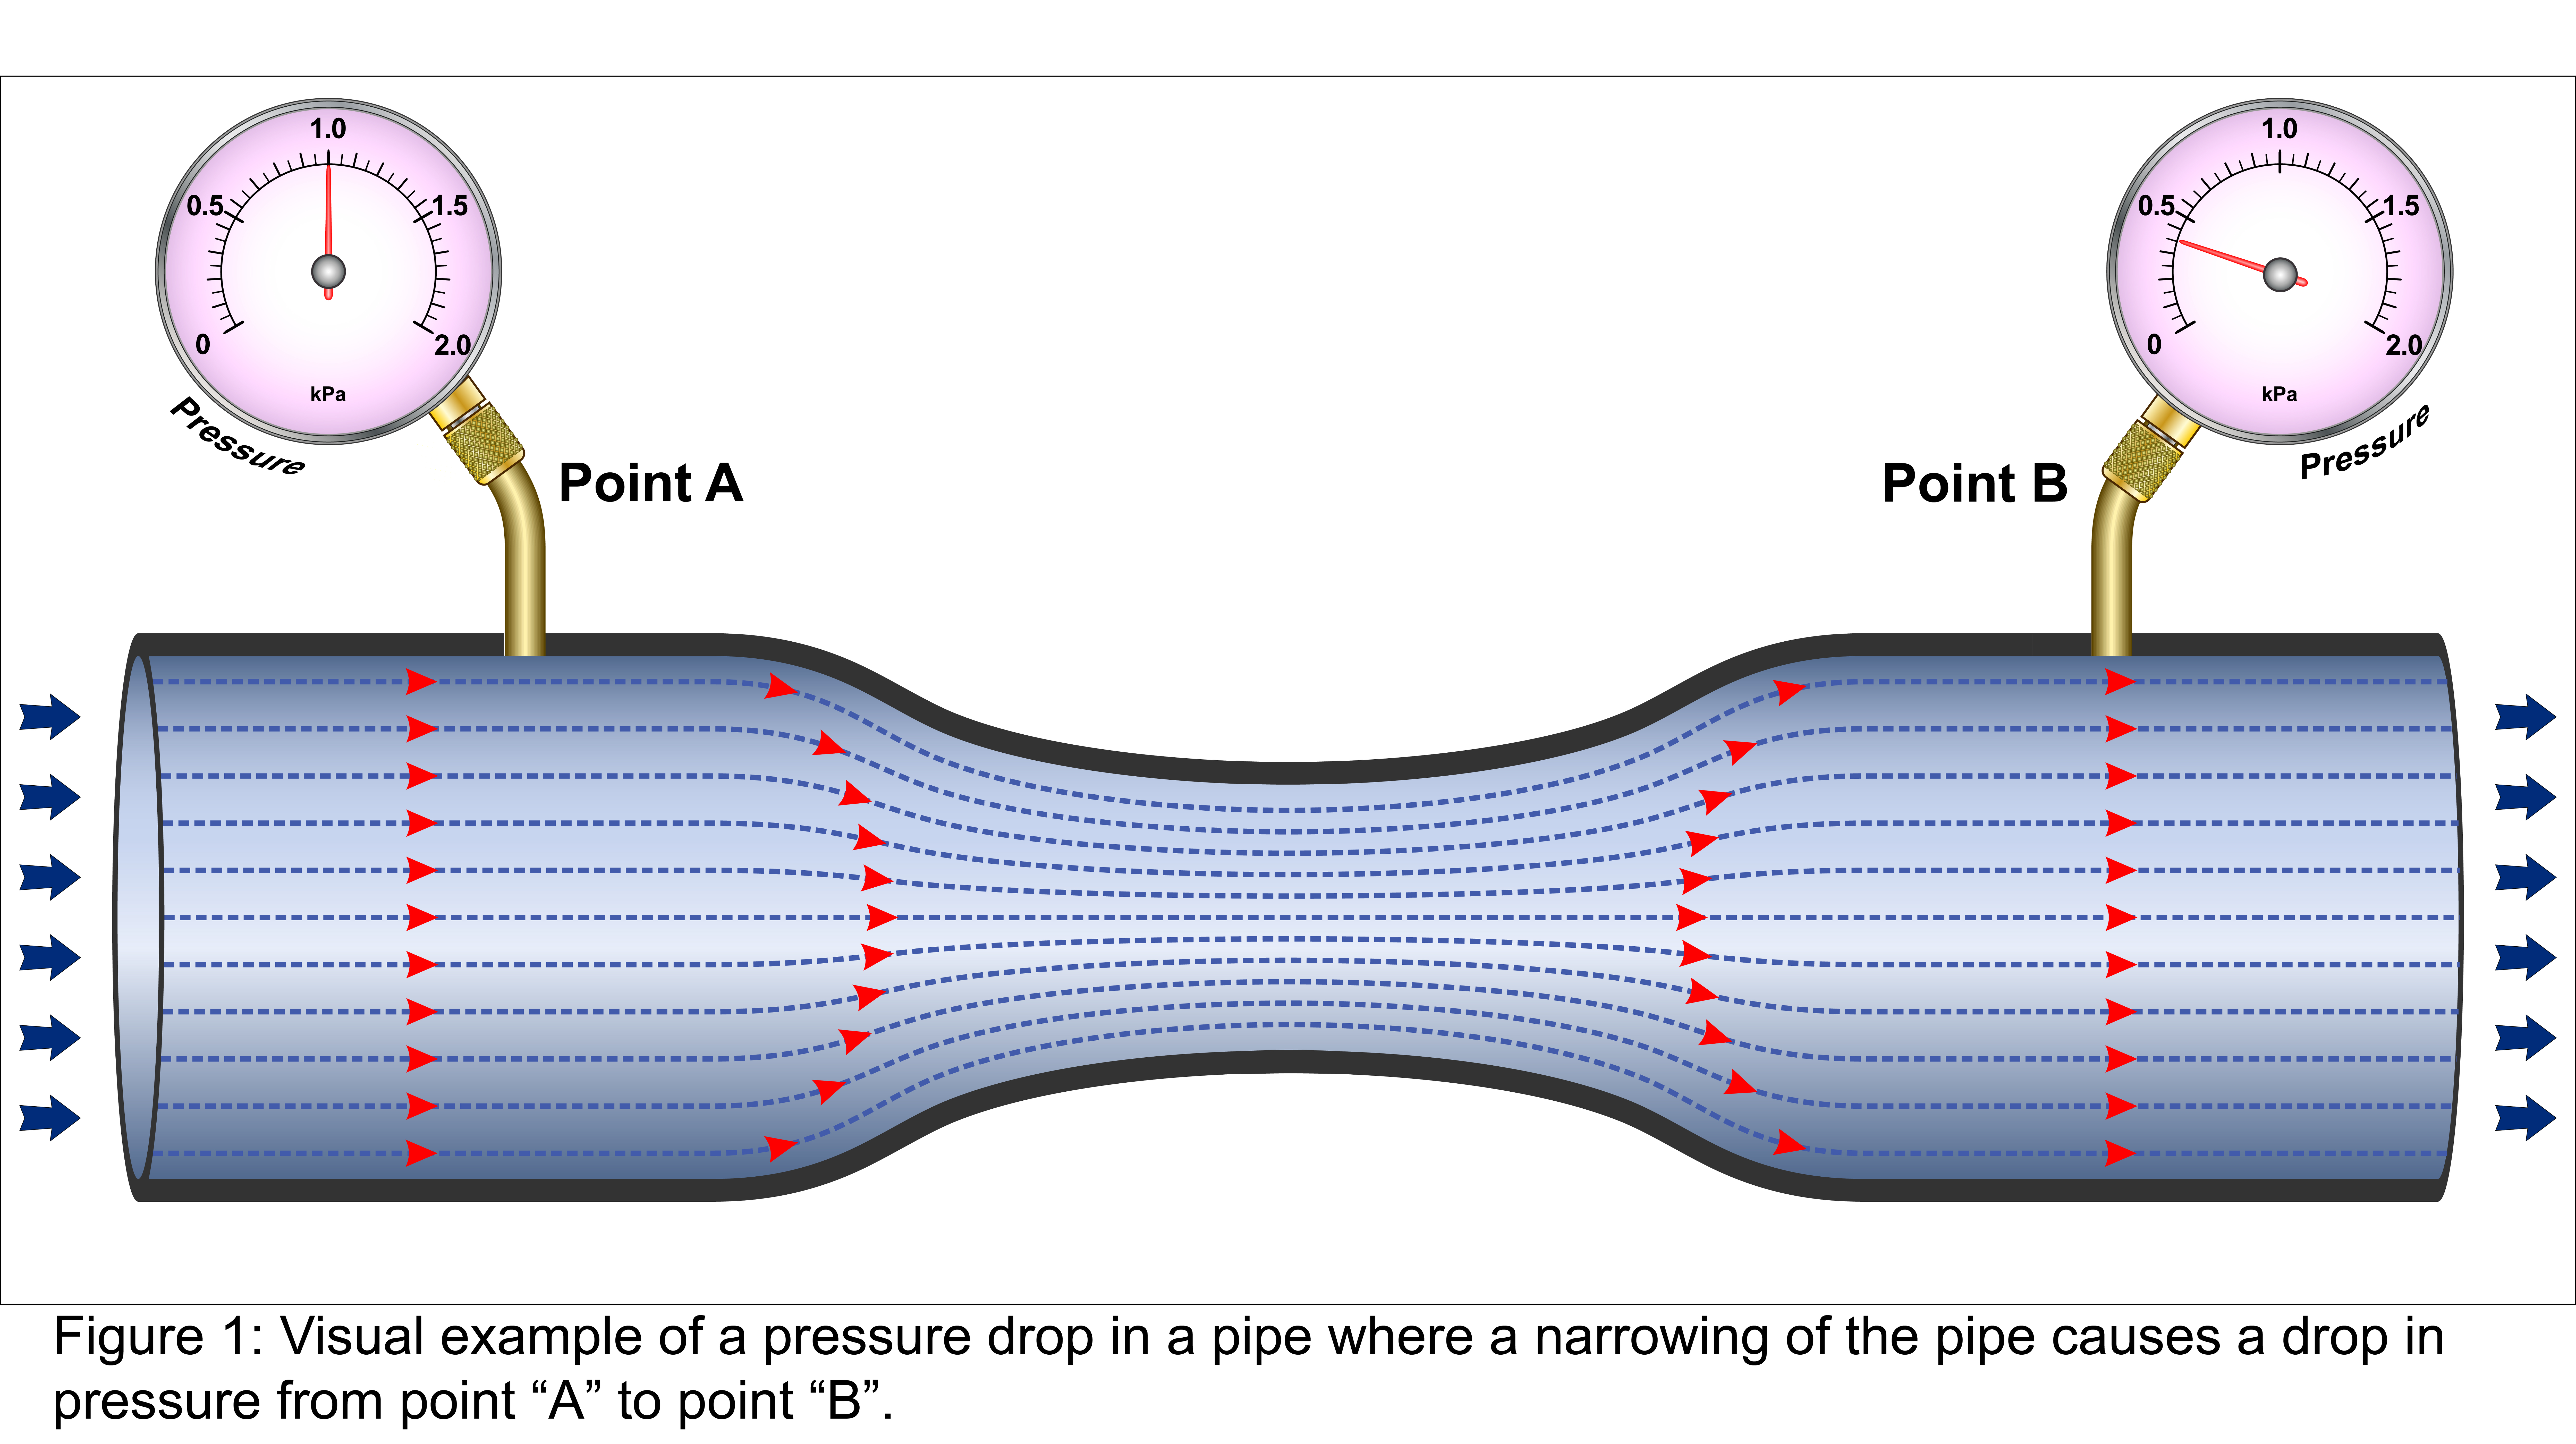 Visualization of Pressure Drop